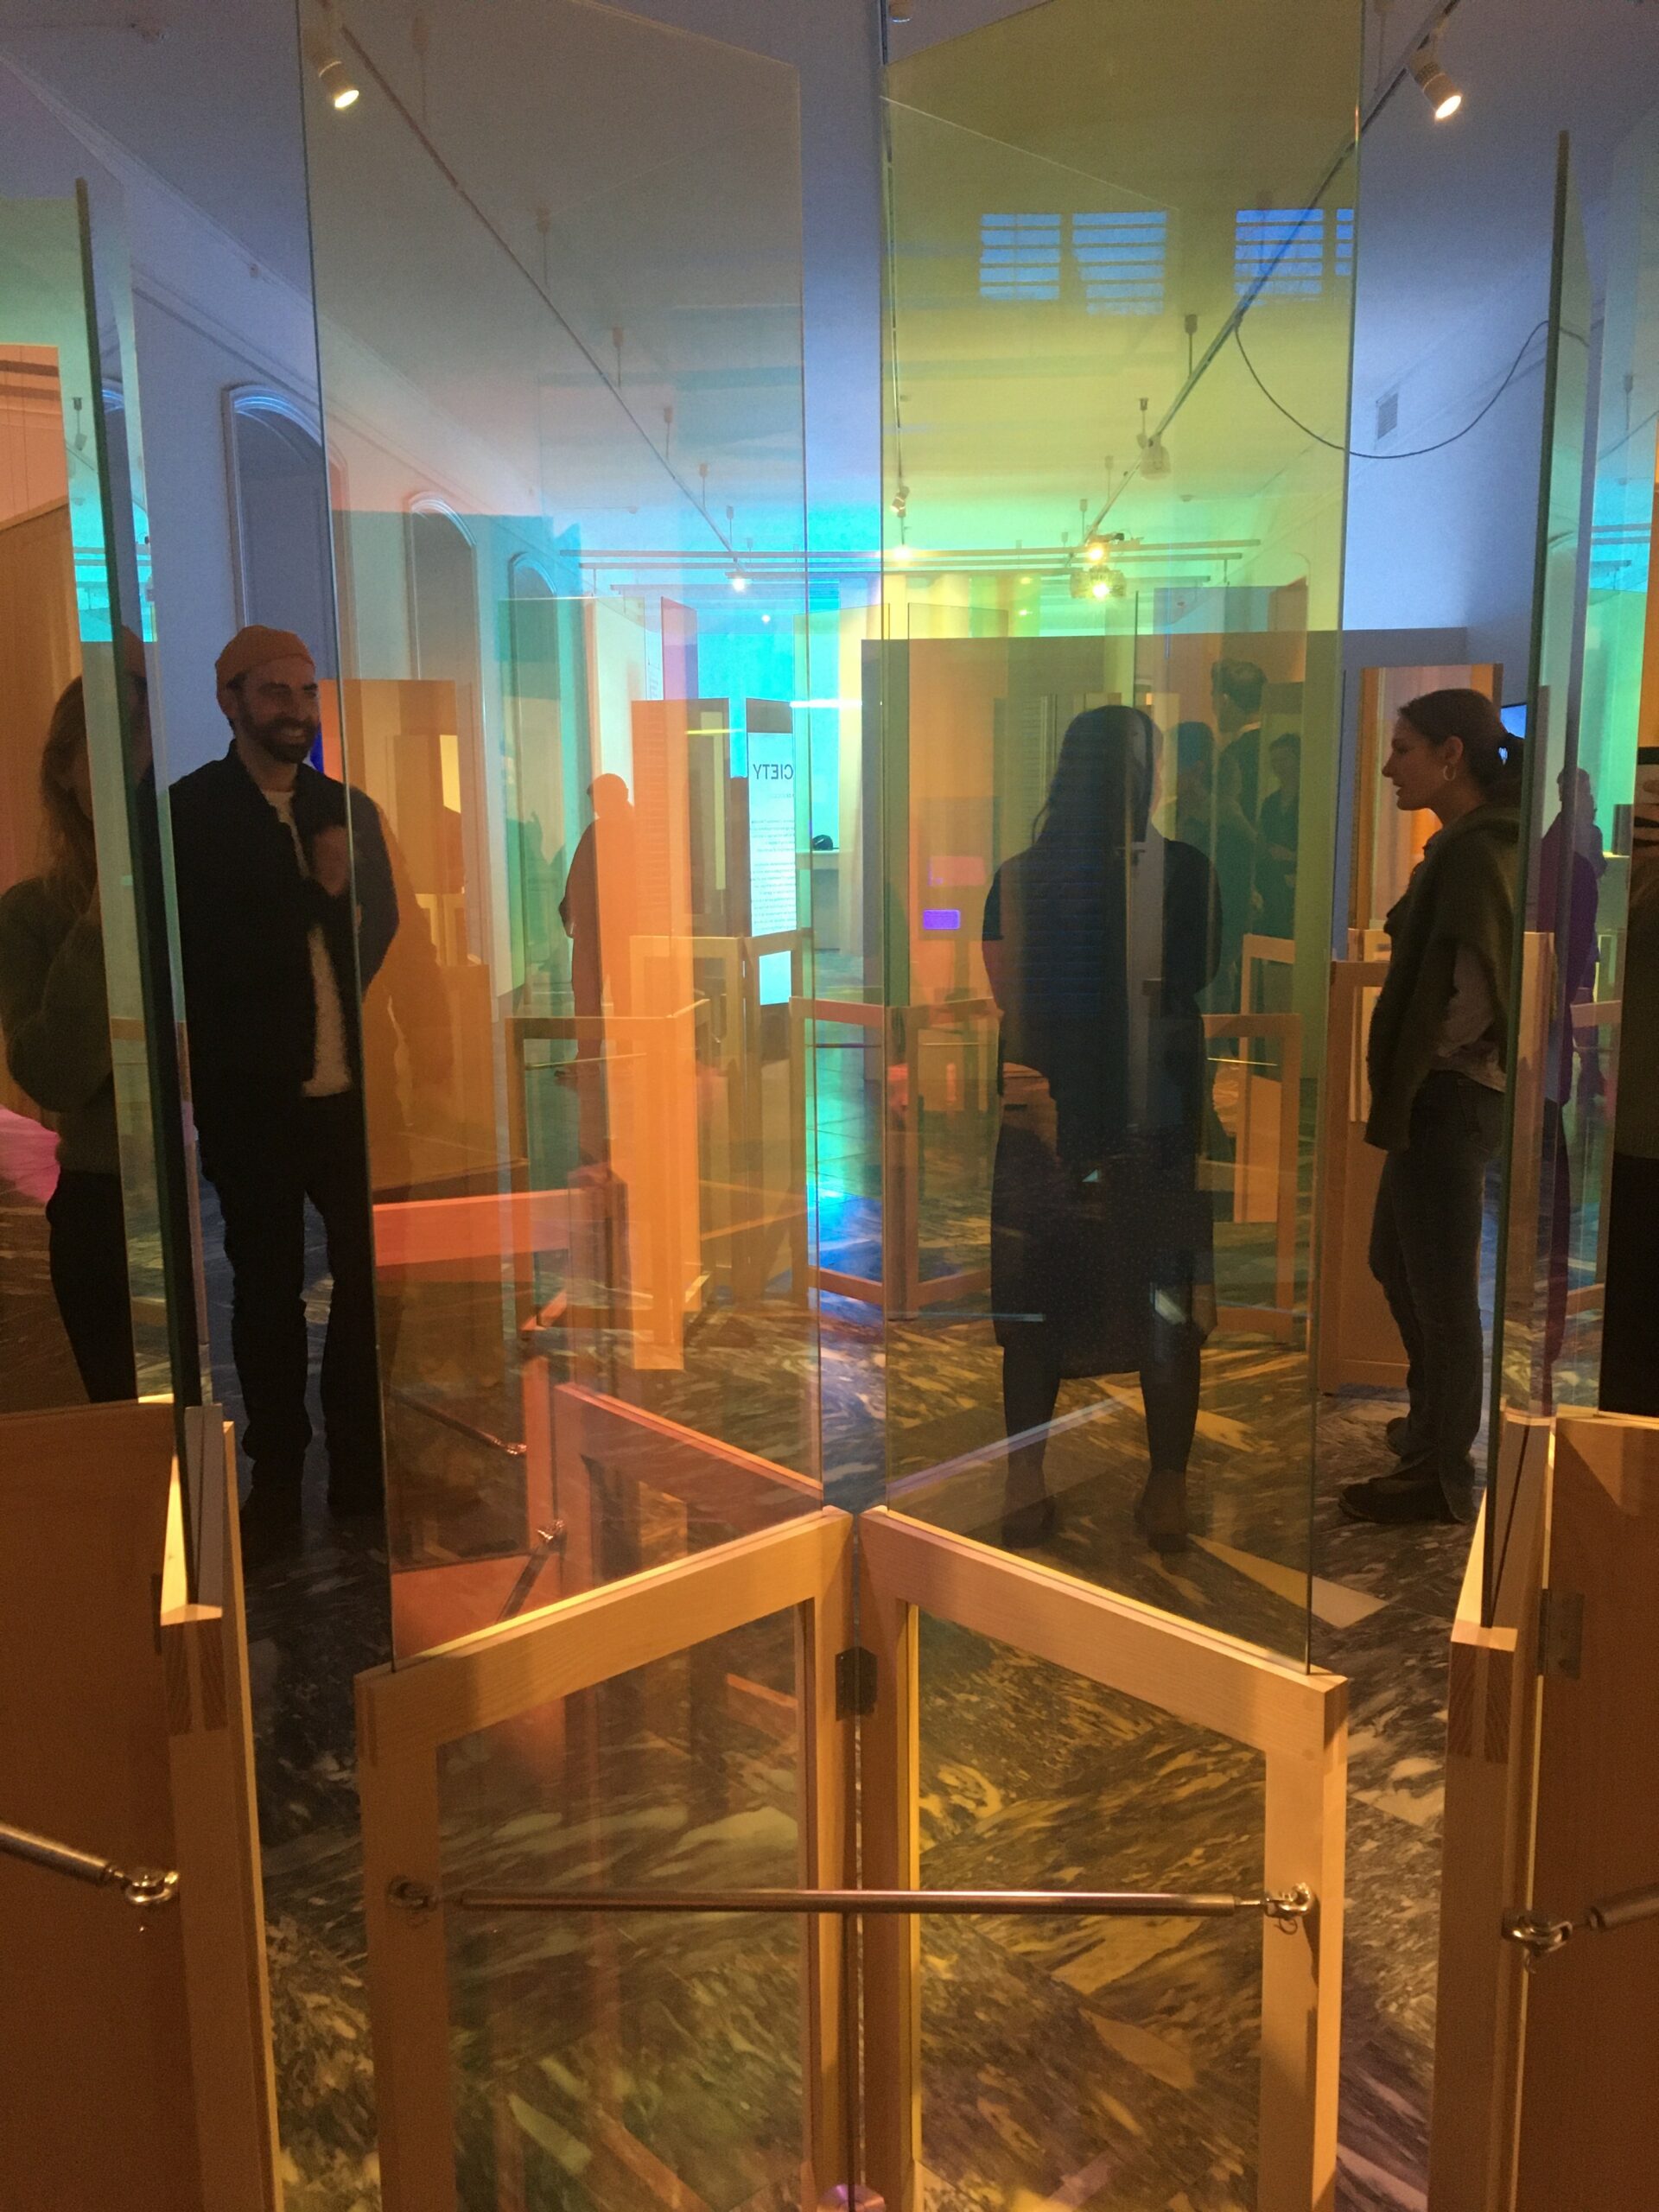 Billede taget i installationen Vanity Chamber. Billedet er taget gennem farvet glas.